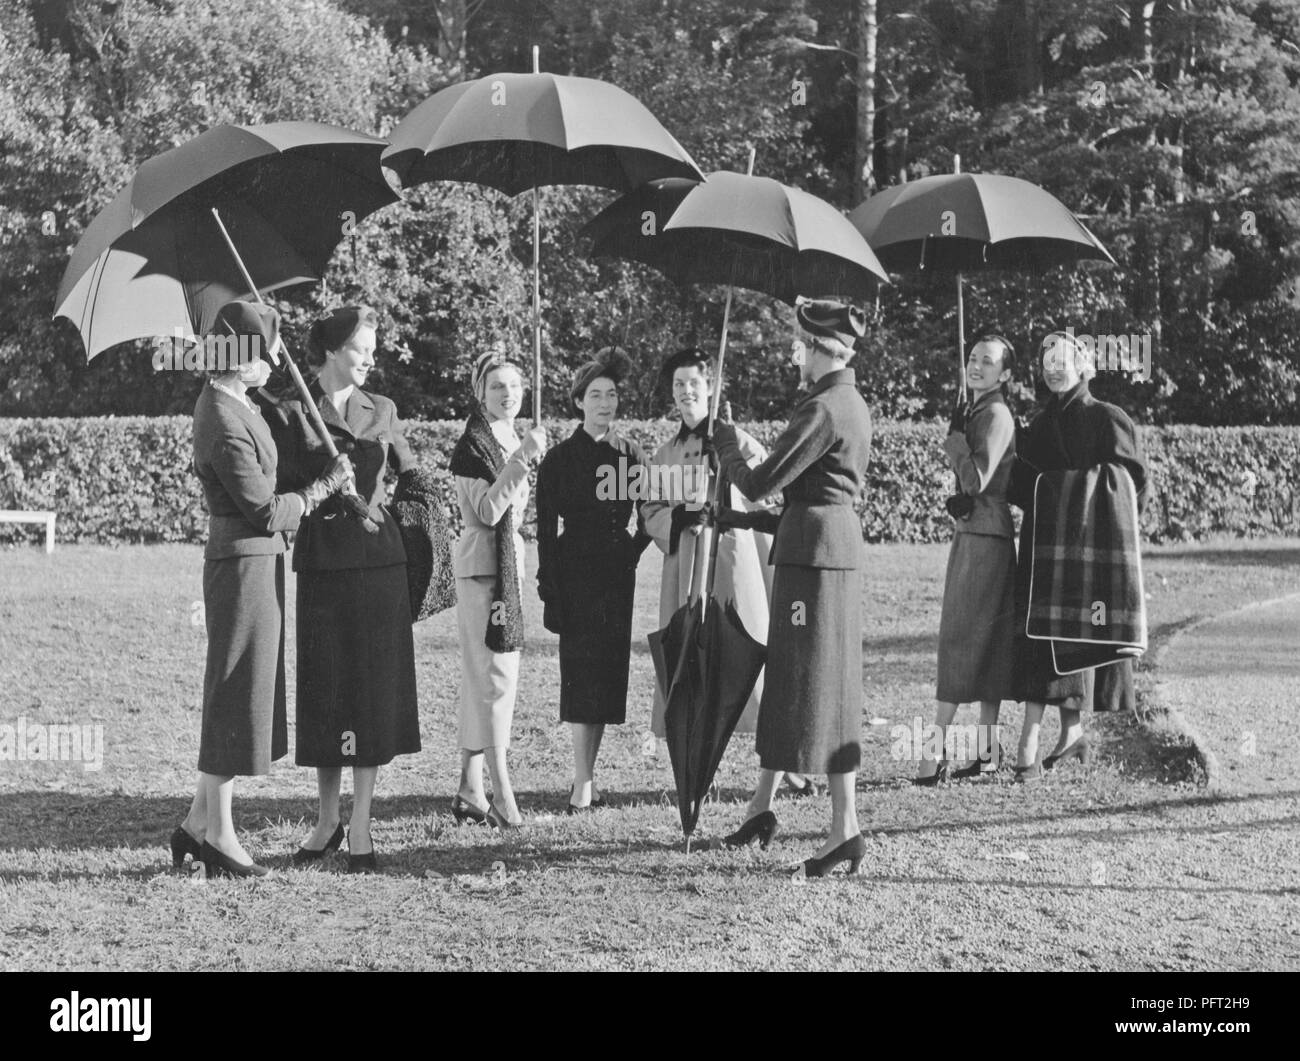 Paraguas en la década de 1950. Un grupo de mujeres vestidas de moda están de pie junto con cuatro sombrillas. Ellos son alumnos de la escuela de moda Märthaskolan en Estocolmo, donde estudian la educación superior dentro de la moda femenina. La escuela es nombrado después de la Princesa Märtha Sueco. Suecia 1954 Foto de stock